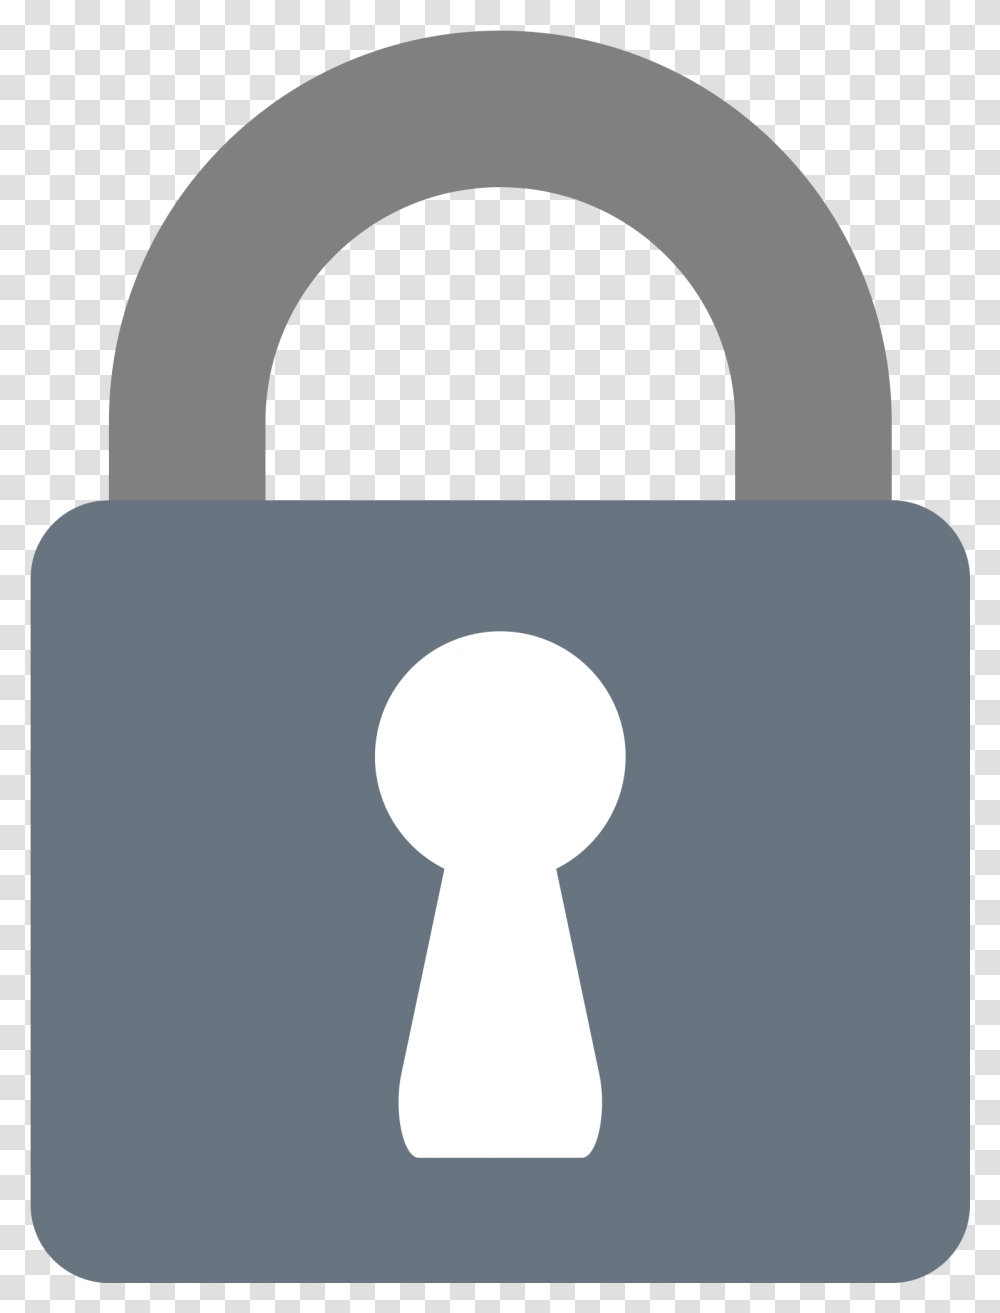 Ville De Saint Etienne Download, Lock, Security, Combination Lock Transparent Png